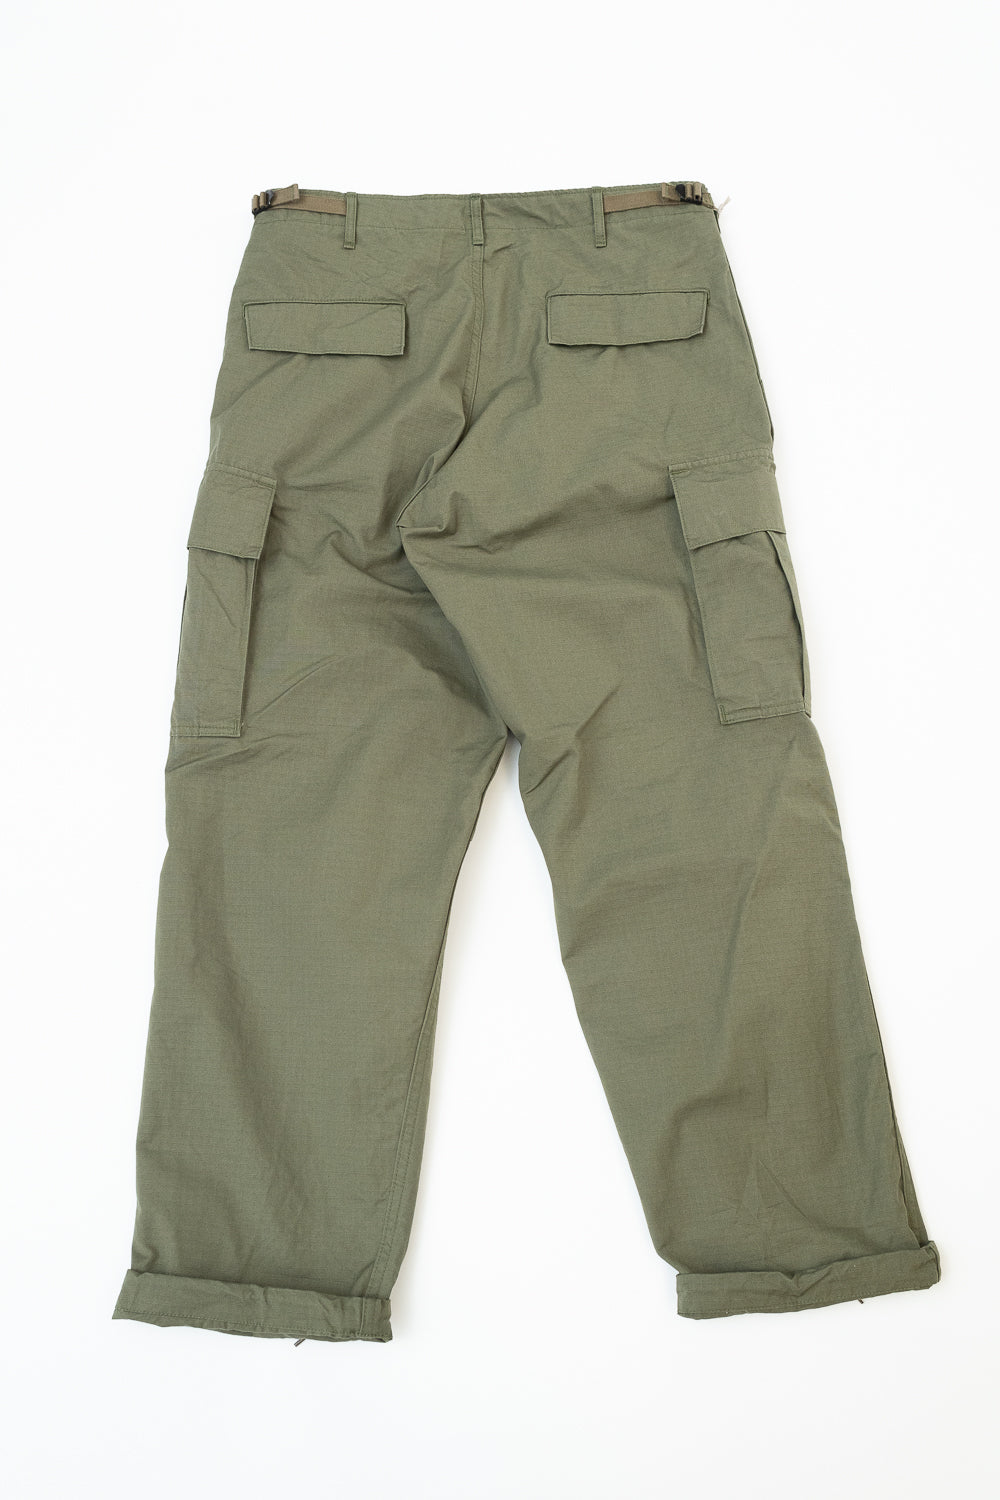 03-V5260RIP-76 - 6-Pocket Cargo Trousers - Vintage Fit - Olive